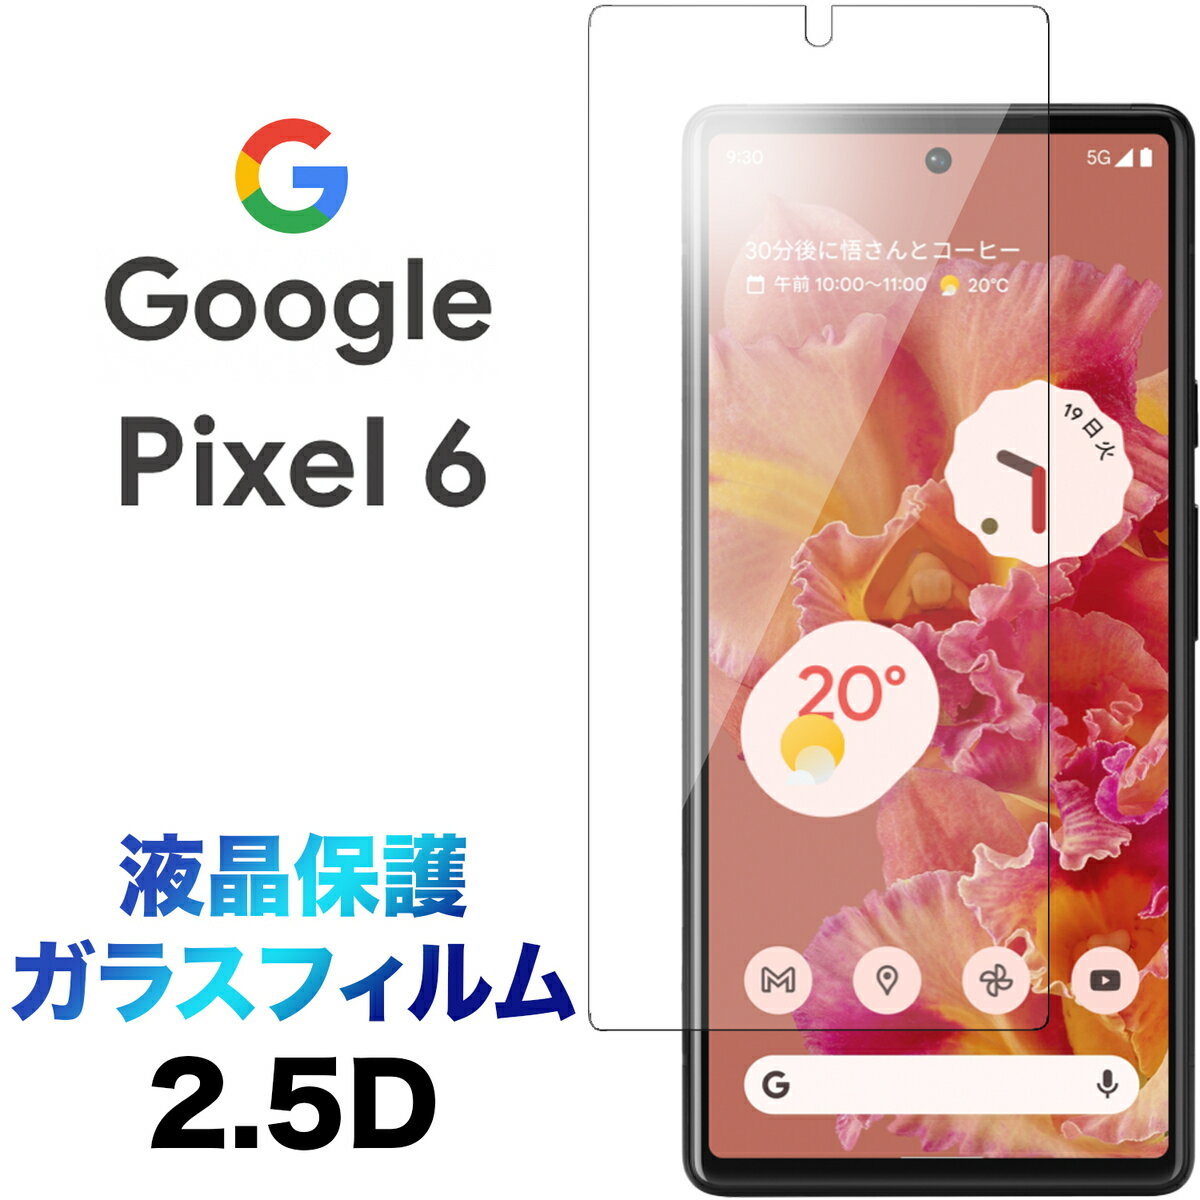 Google Pixel 6 ガラスフィルム pixel6 2.5D 画面保護保護フィルム 強化ガラス 硬度9H 液晶保護 クリーナーシート付き ラウンドエッジ SoftBank ソフトバンク au エーユー グーグル ピクセル シックス ピクセル6 送料無料